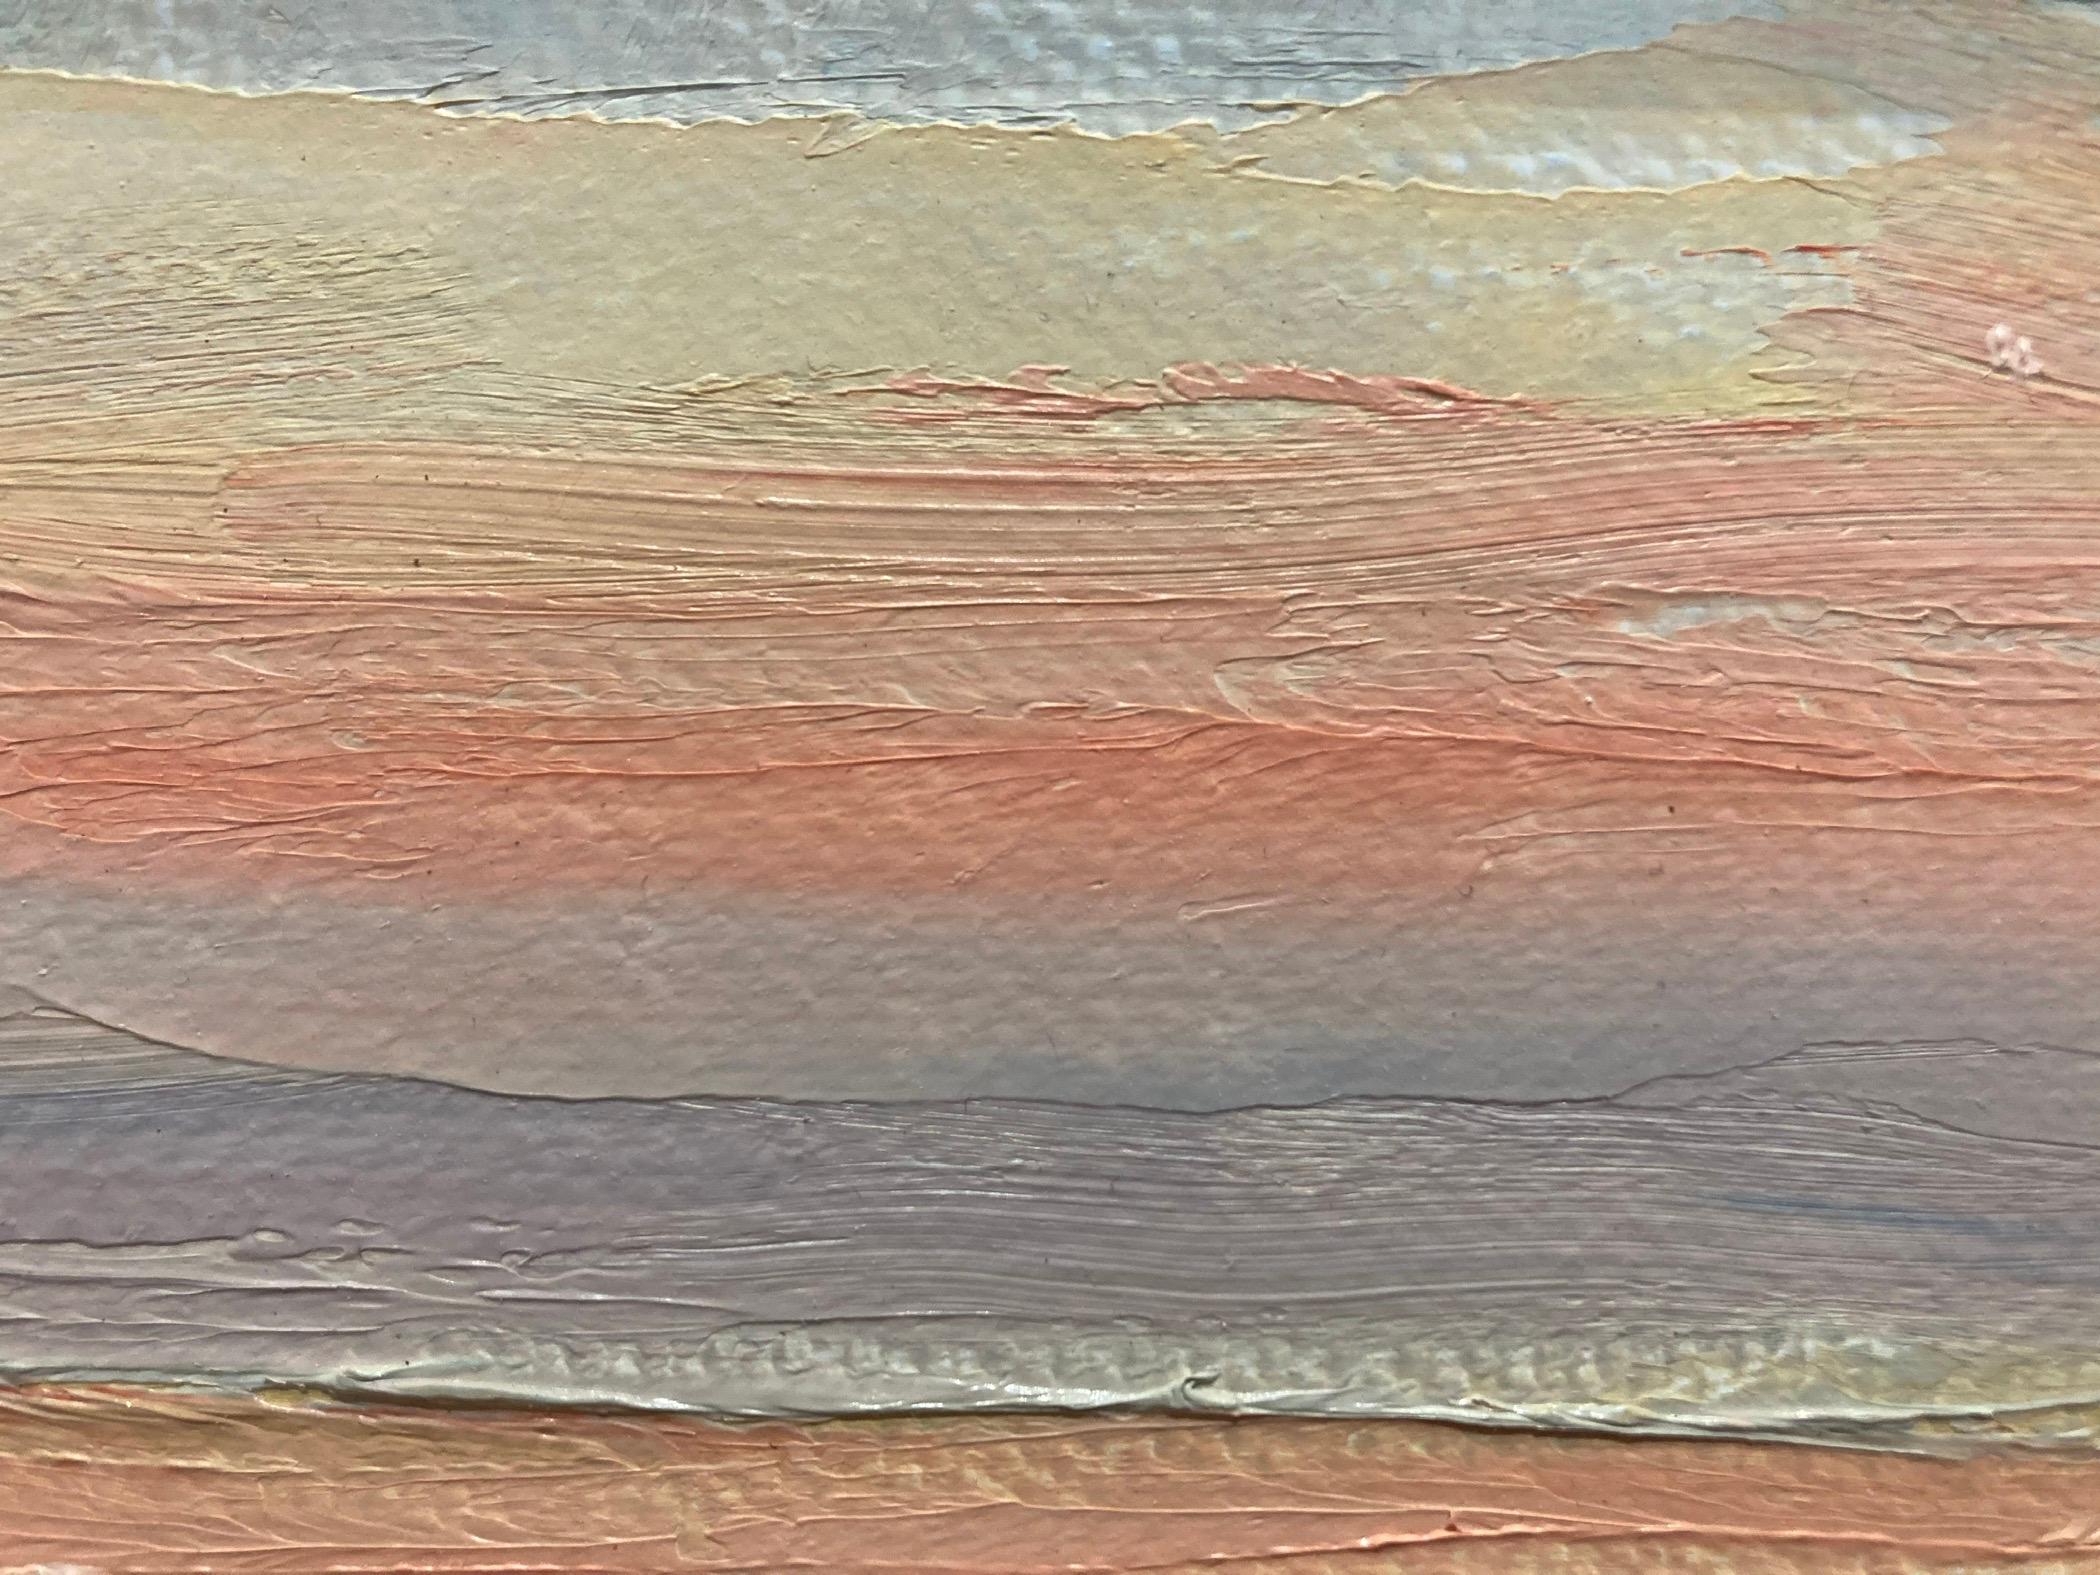 Ein Ölgemälde mit einem dramatischen Sonnenuntergang auf dem Wasser. Die rosafarbenen und orangefarbenen Pinselstriche am Himmel spiegeln sich auf den Wellen wider und verstärken sie. Ein dunstiger violetter Streifen trennt das Meer und den Himmel.